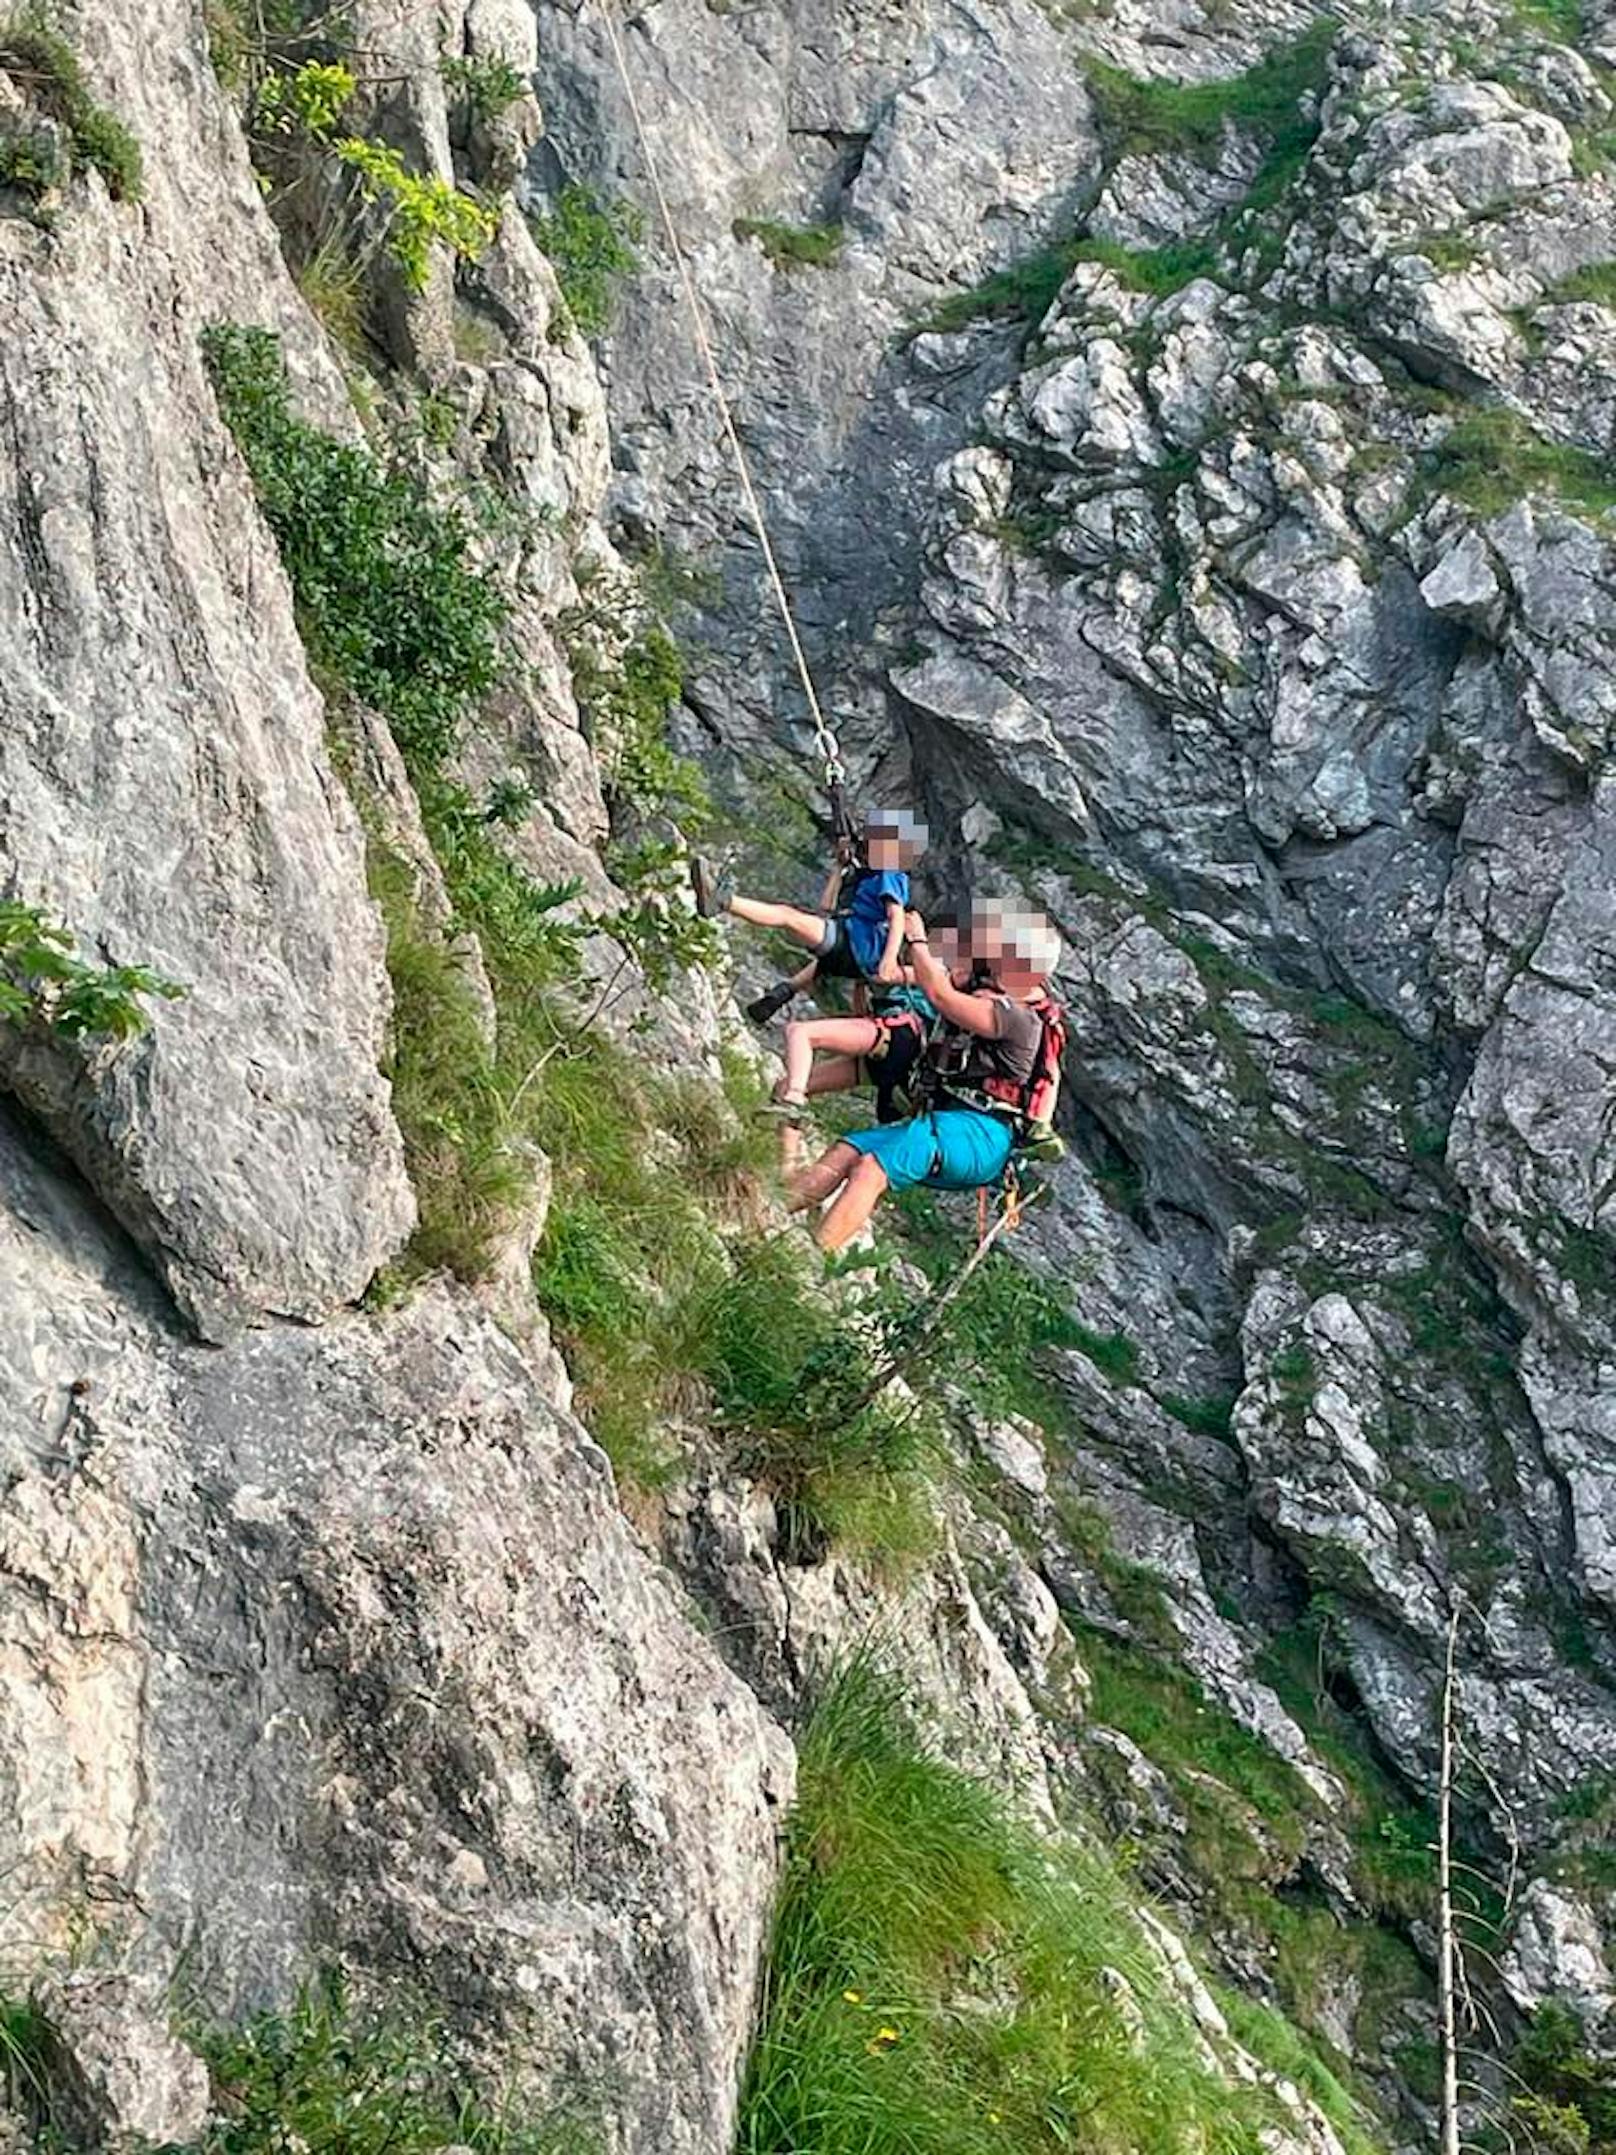 Urlauber kletterten samt Kind (5) in Sandalen auf Berg